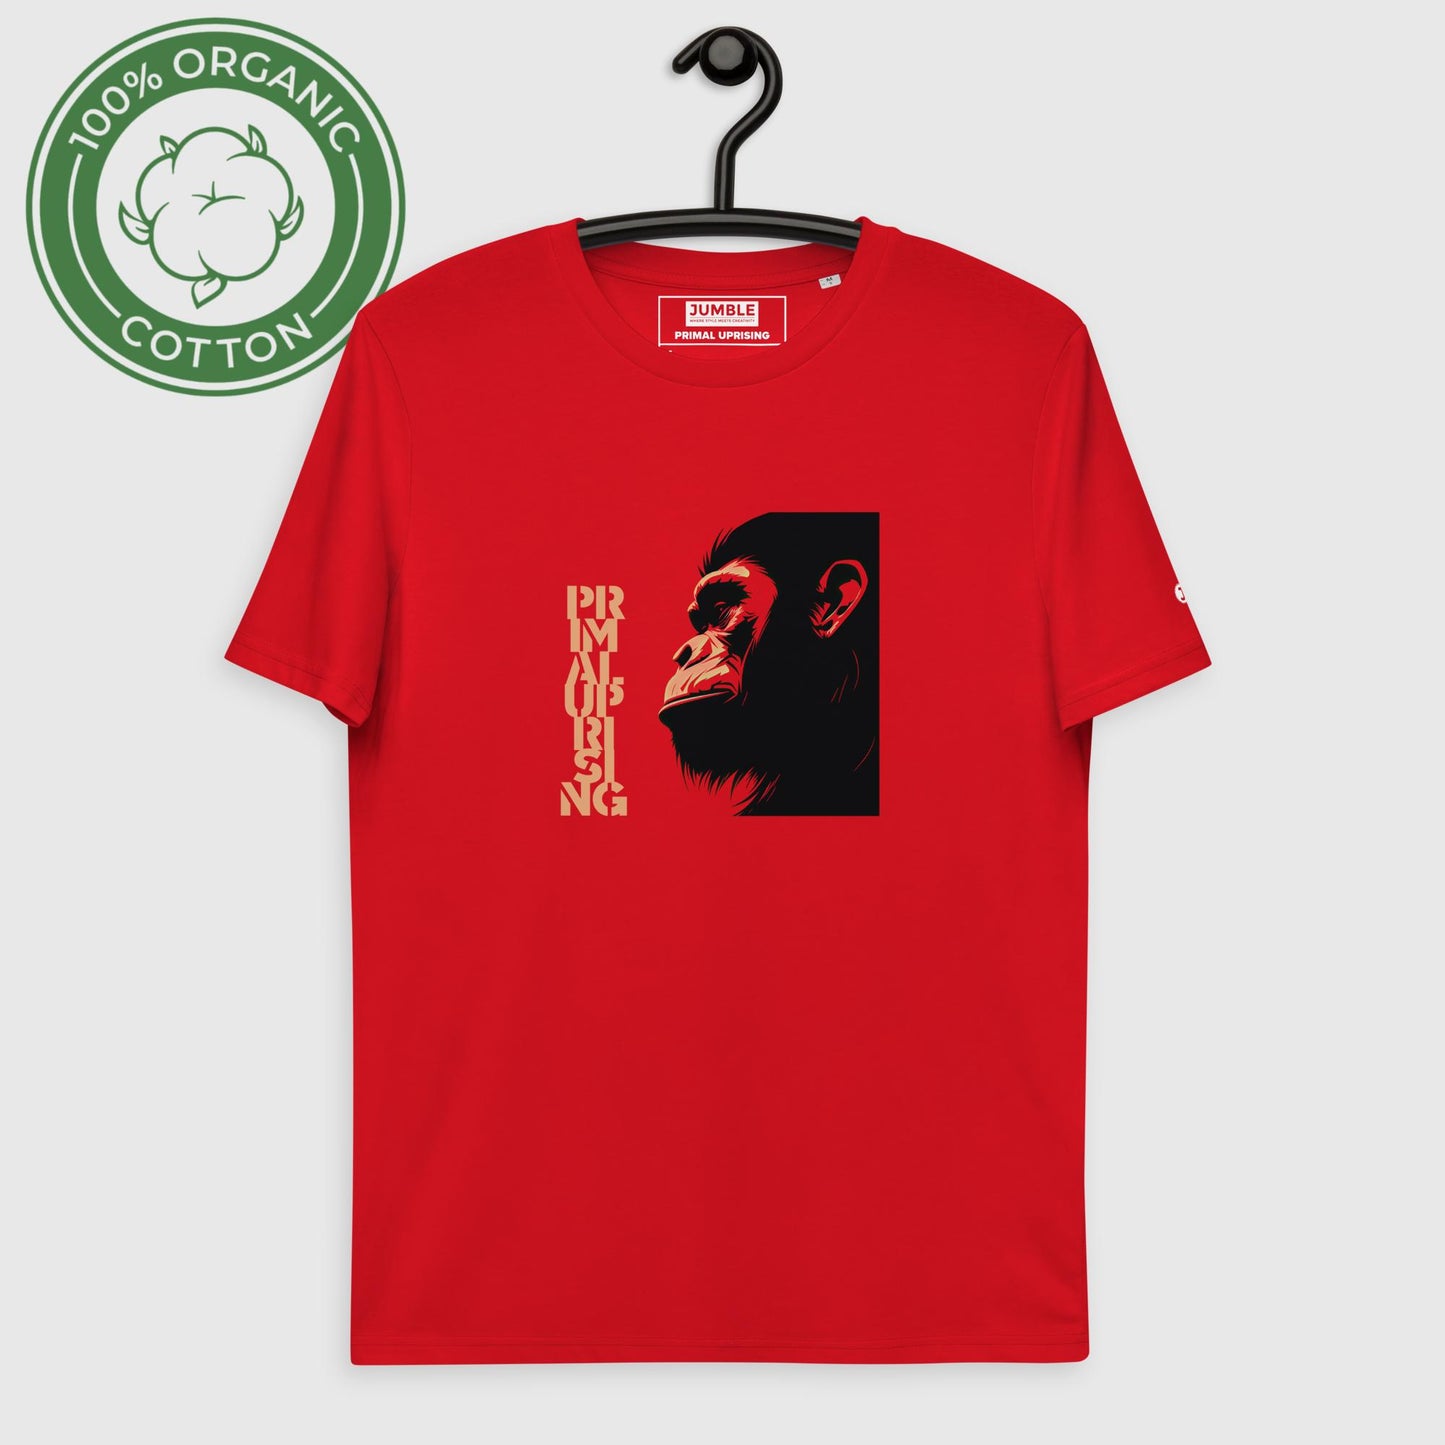 Red Primal Uprising Unisex organic cotton t-shirt displayed on hanger